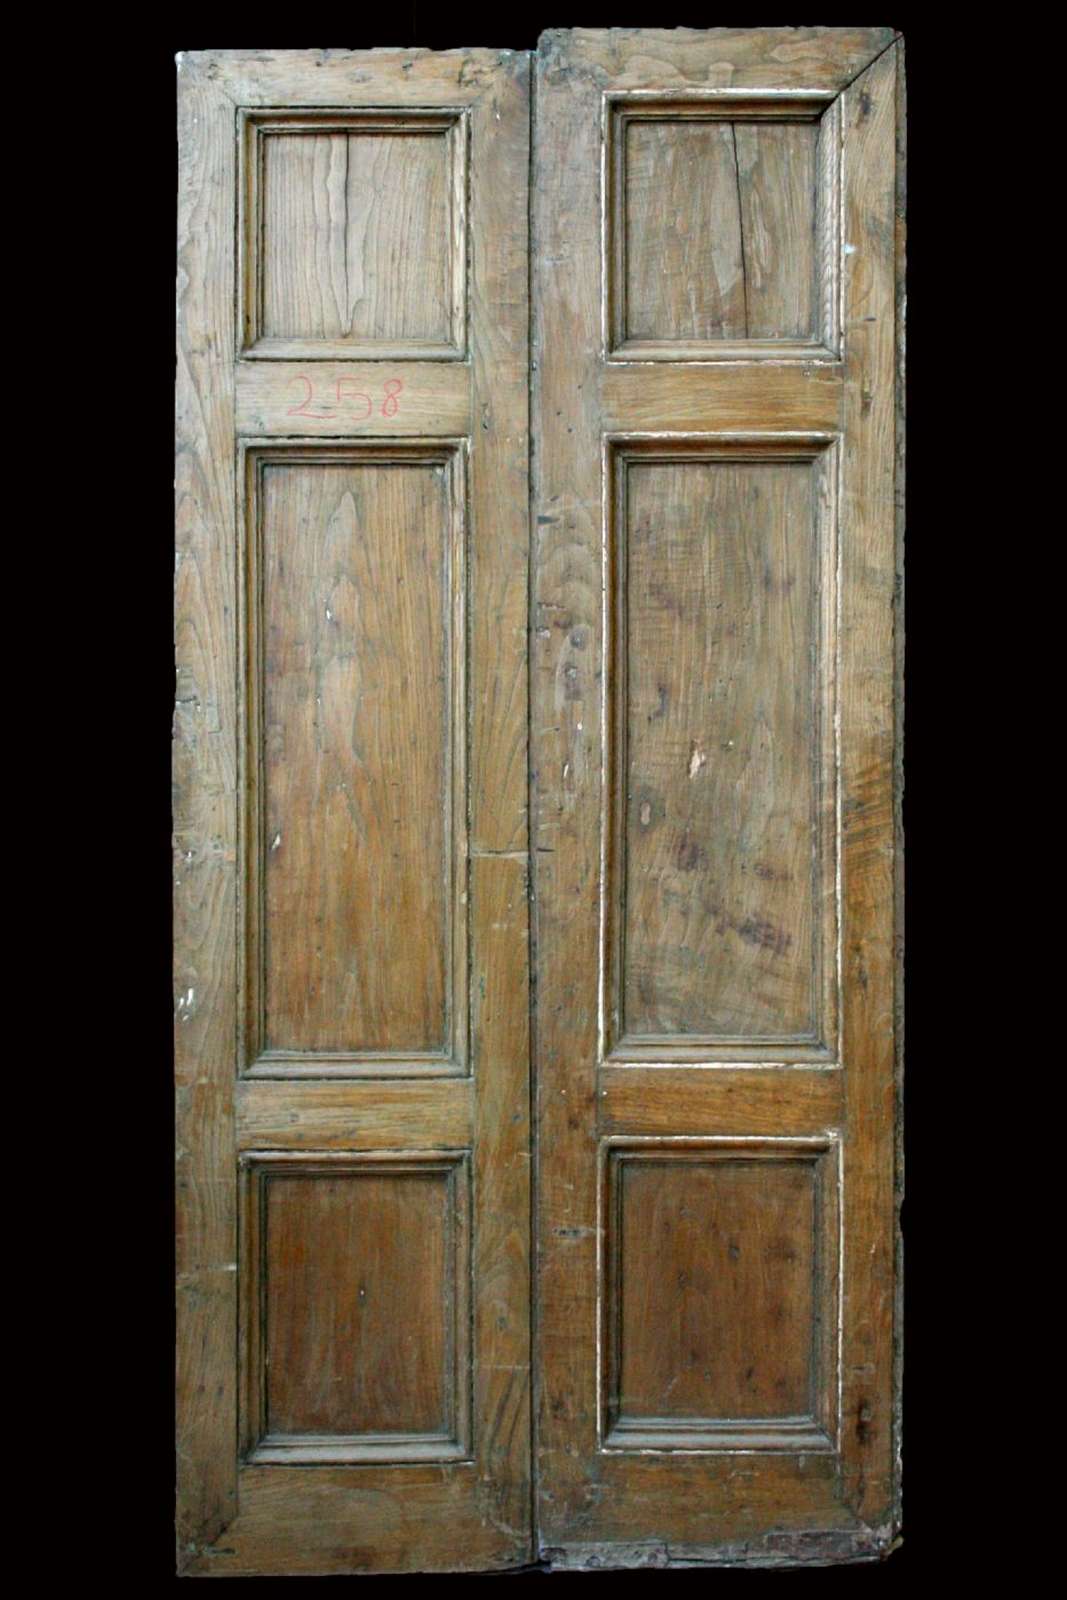 Antica coppia di porte ad un' anta sola in rovere. Epoca 1800. - Porte in Legno - Porte Antiche - Prodotti - Antichità Fiorillo